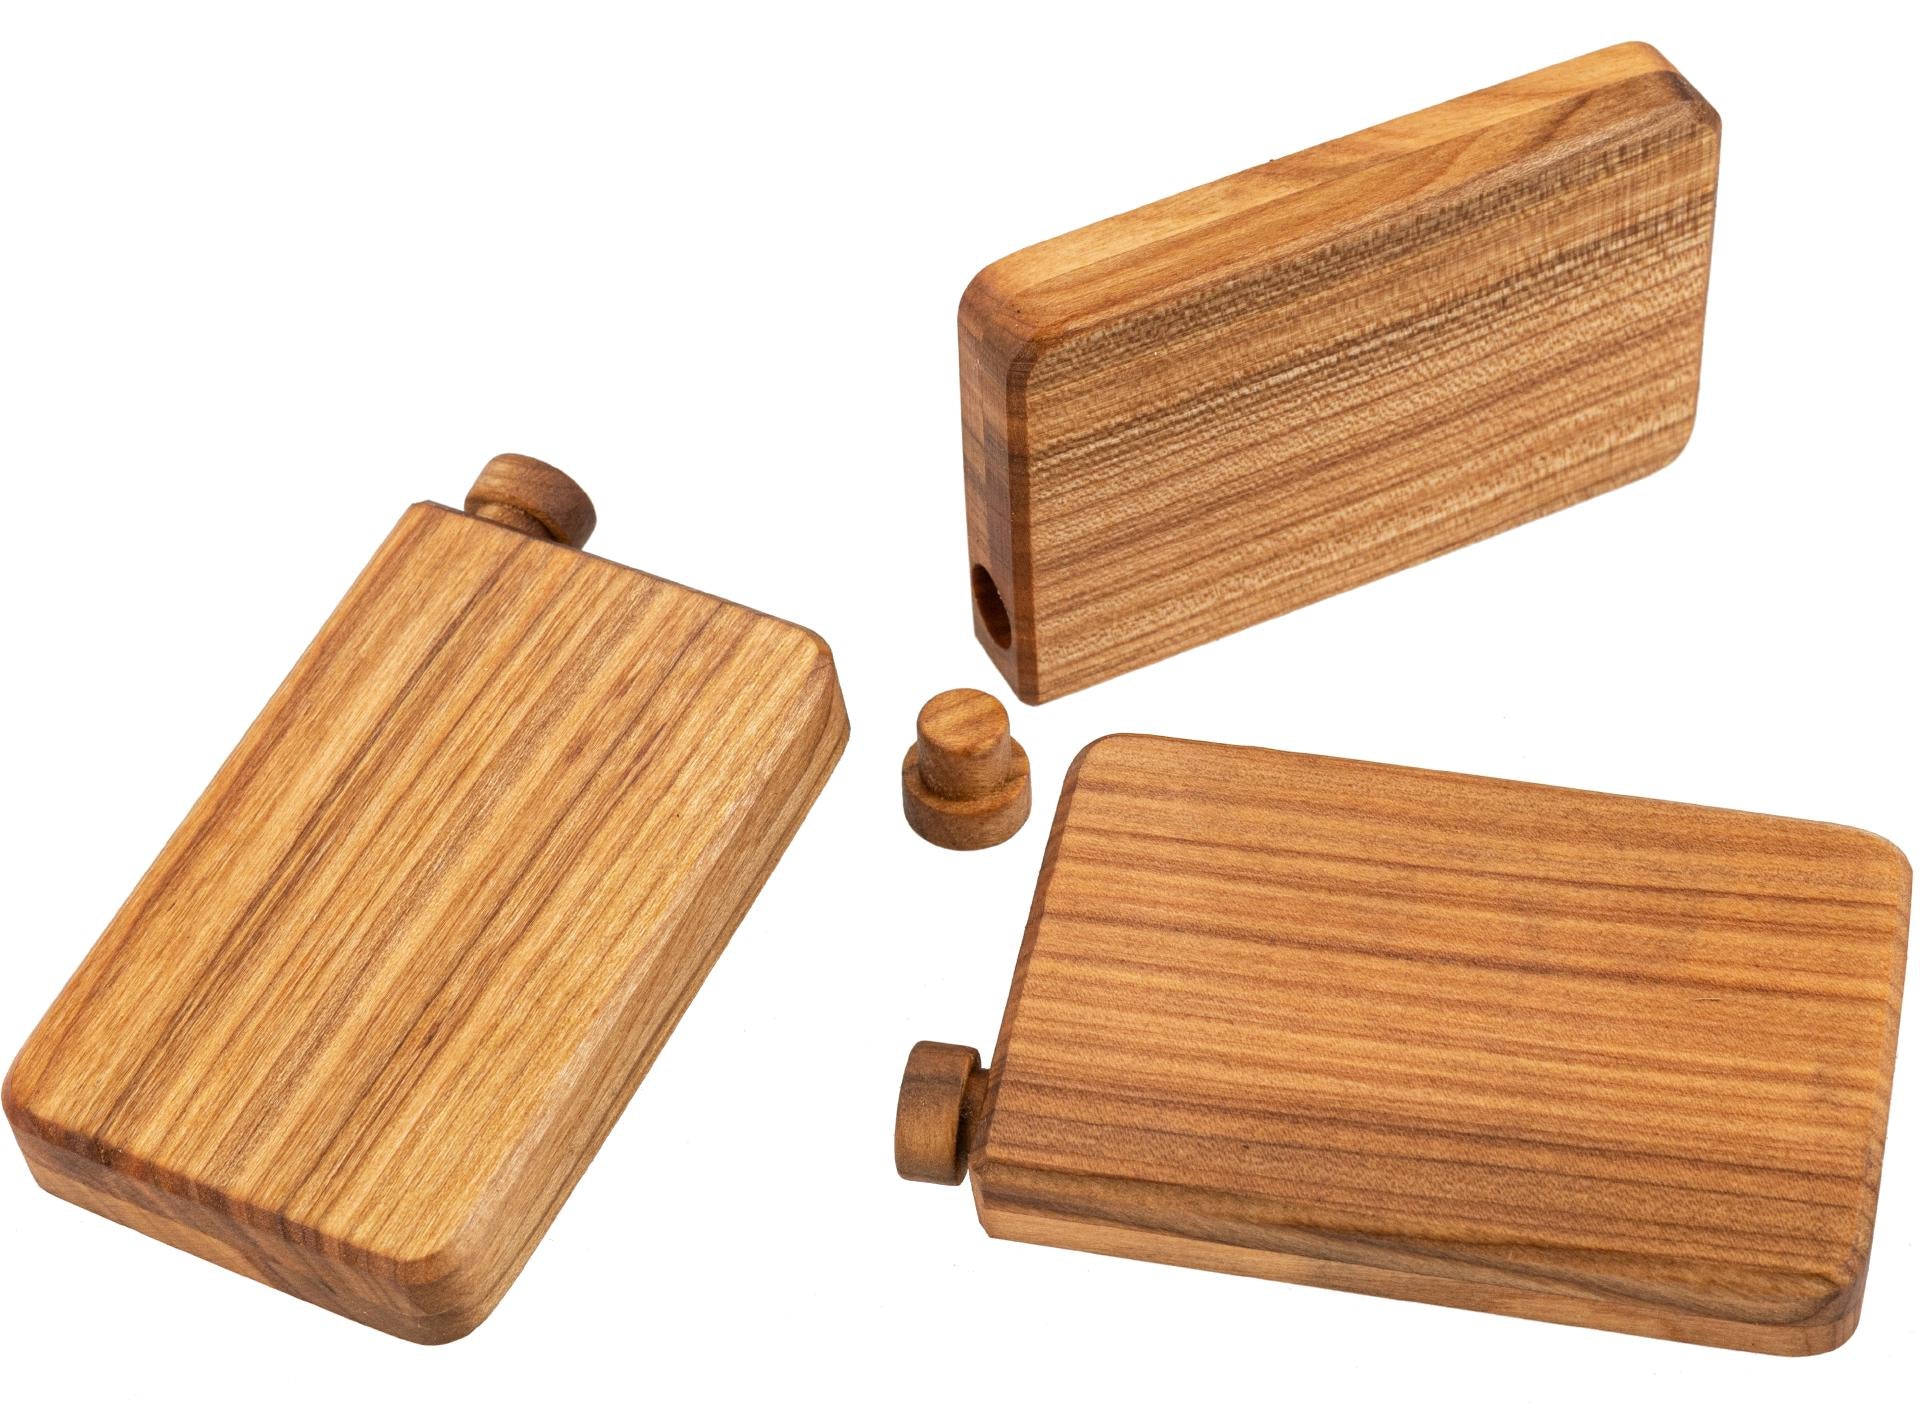 Edle Holzdose aus geöltem Kirschholz mit Holzstopfen - ideal für Schnupftabak, Salz oder Gewürze - 34 cm³ Volumen